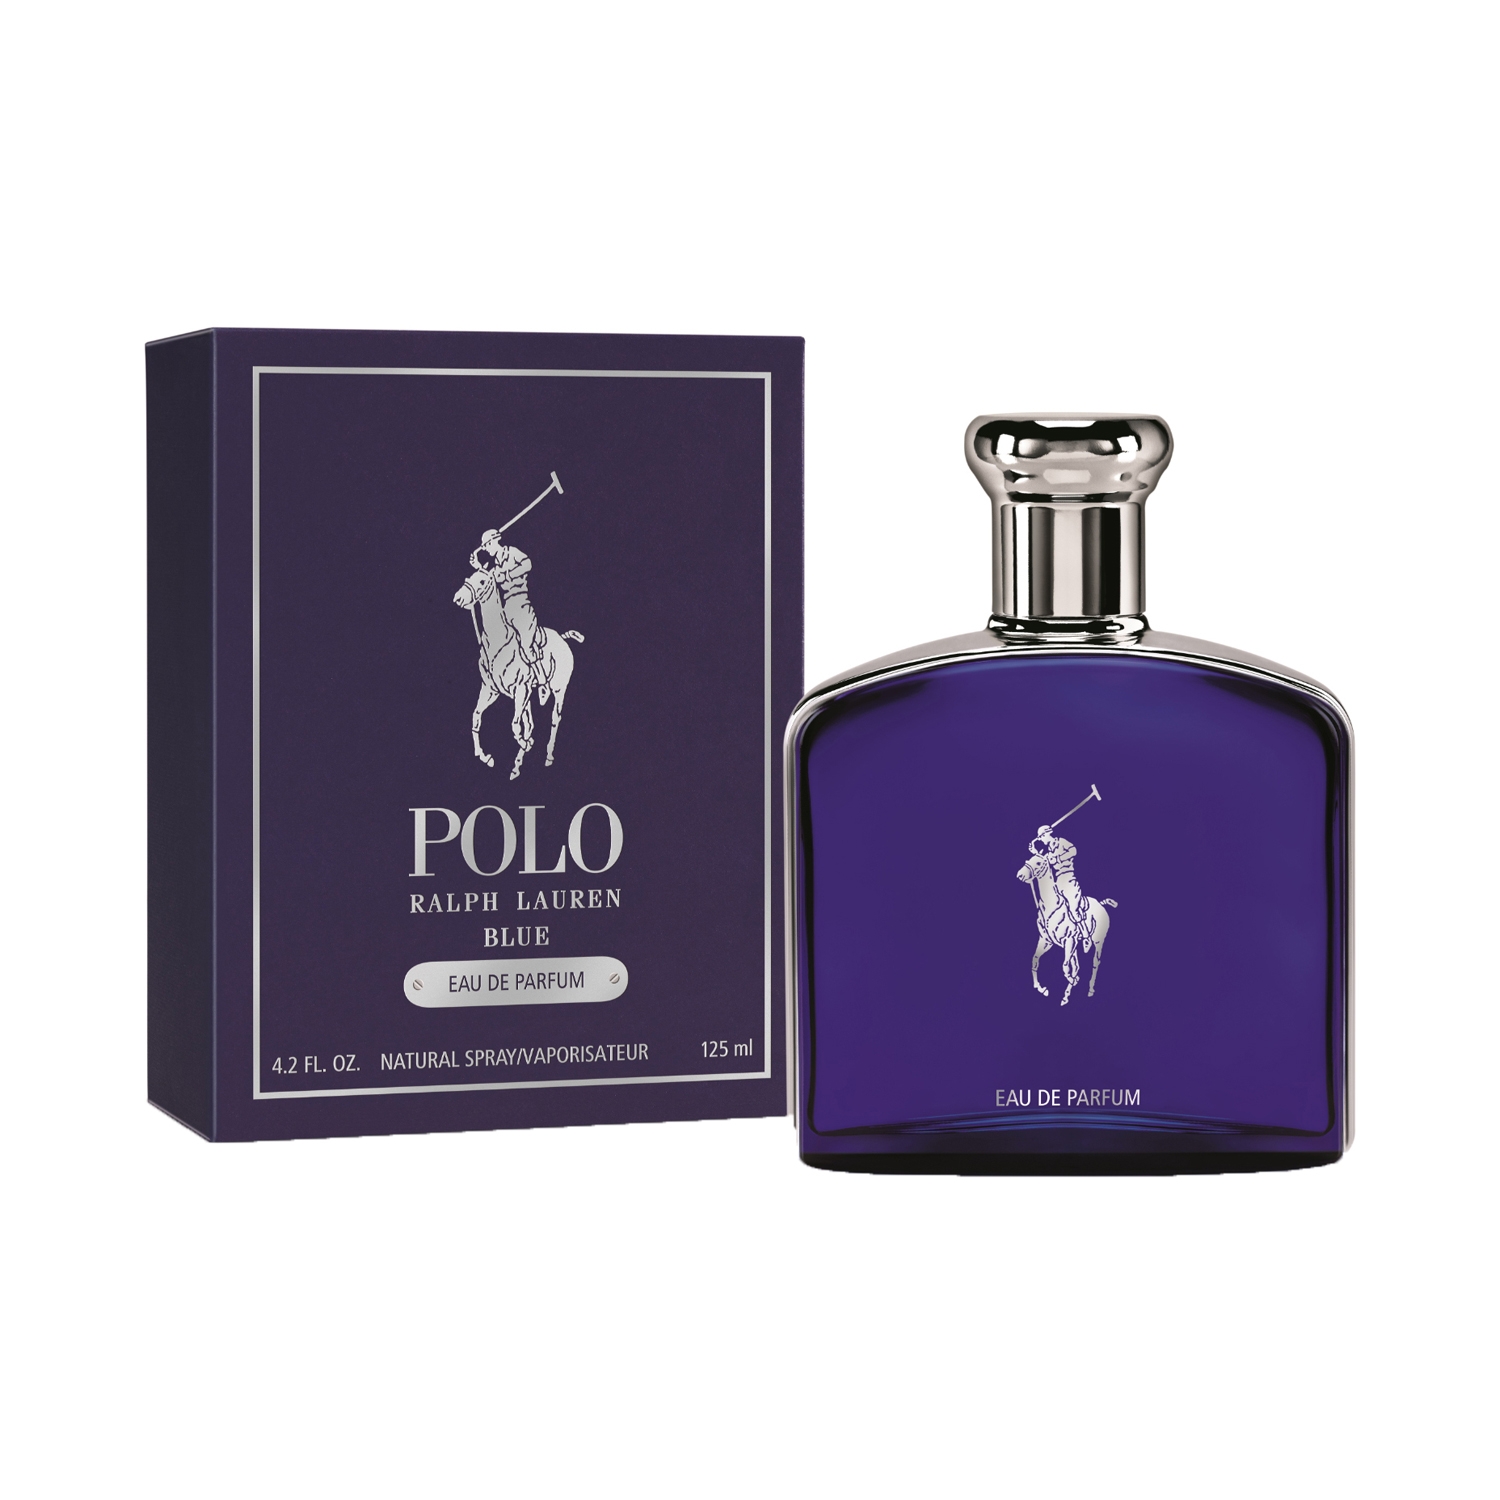 Buy Ralph Lauren Polo Blue Eau De Parfum (125ml) Online at Best Price in  India